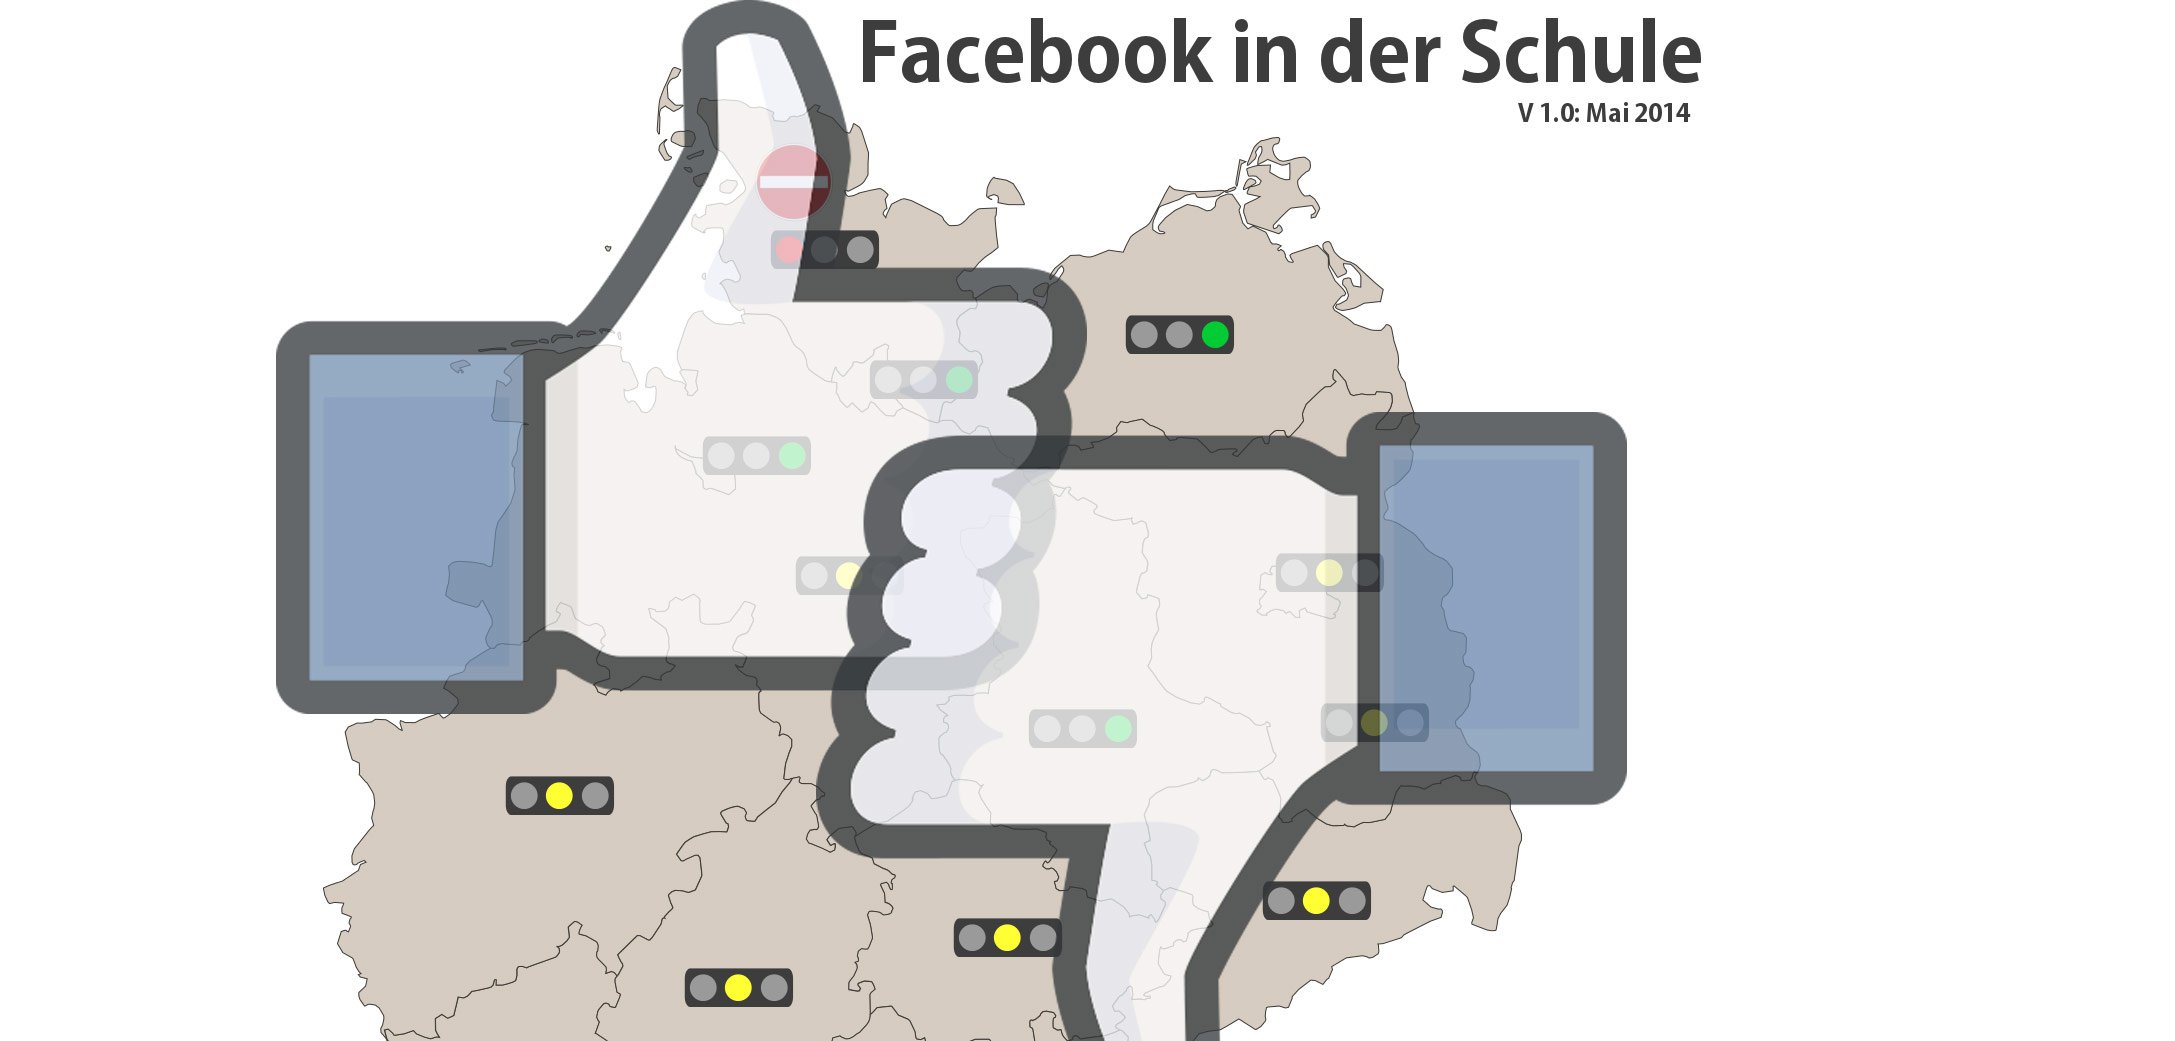 Facebook Verbot in der Schule: Ist Facebook für die Schule erlaubt oder verboten? 7